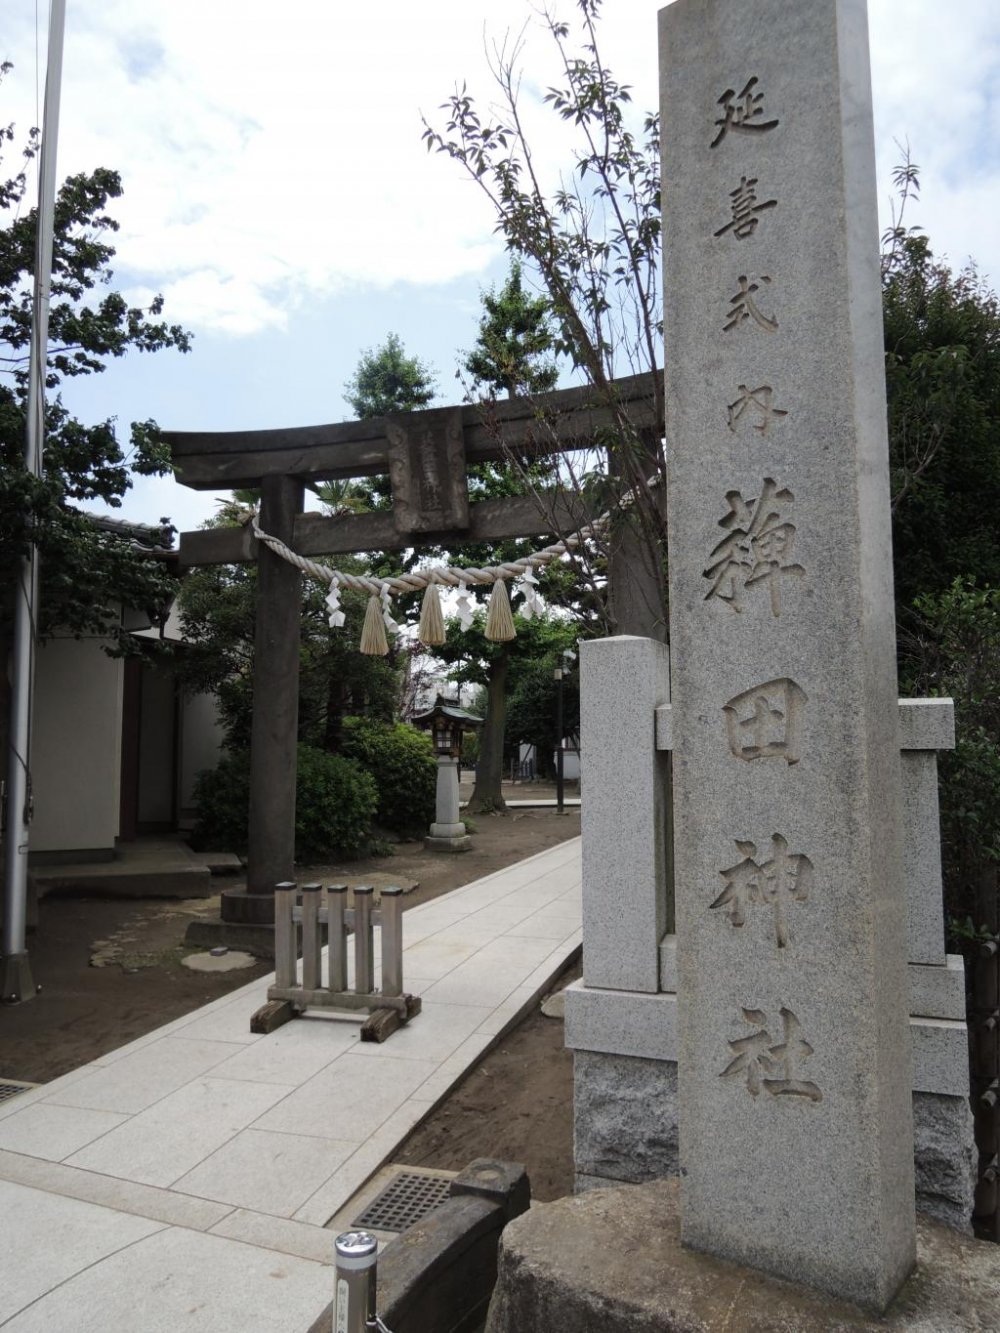 Engi-style shrine